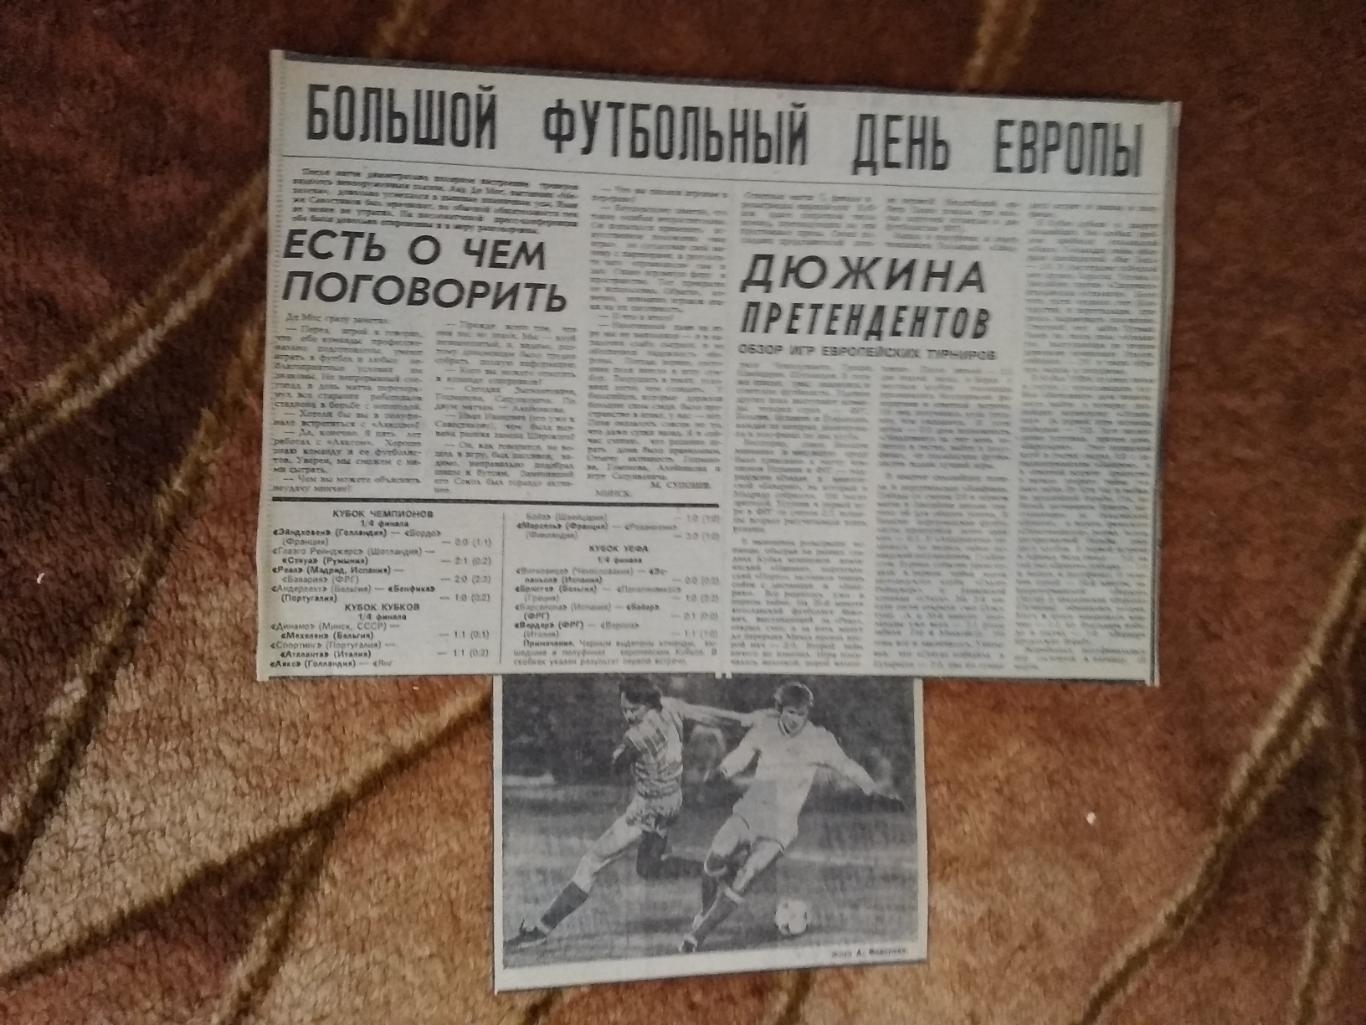 ЕК.Футбол.Большой футбольный день Европы. Март 1988 г. Советский спорт.